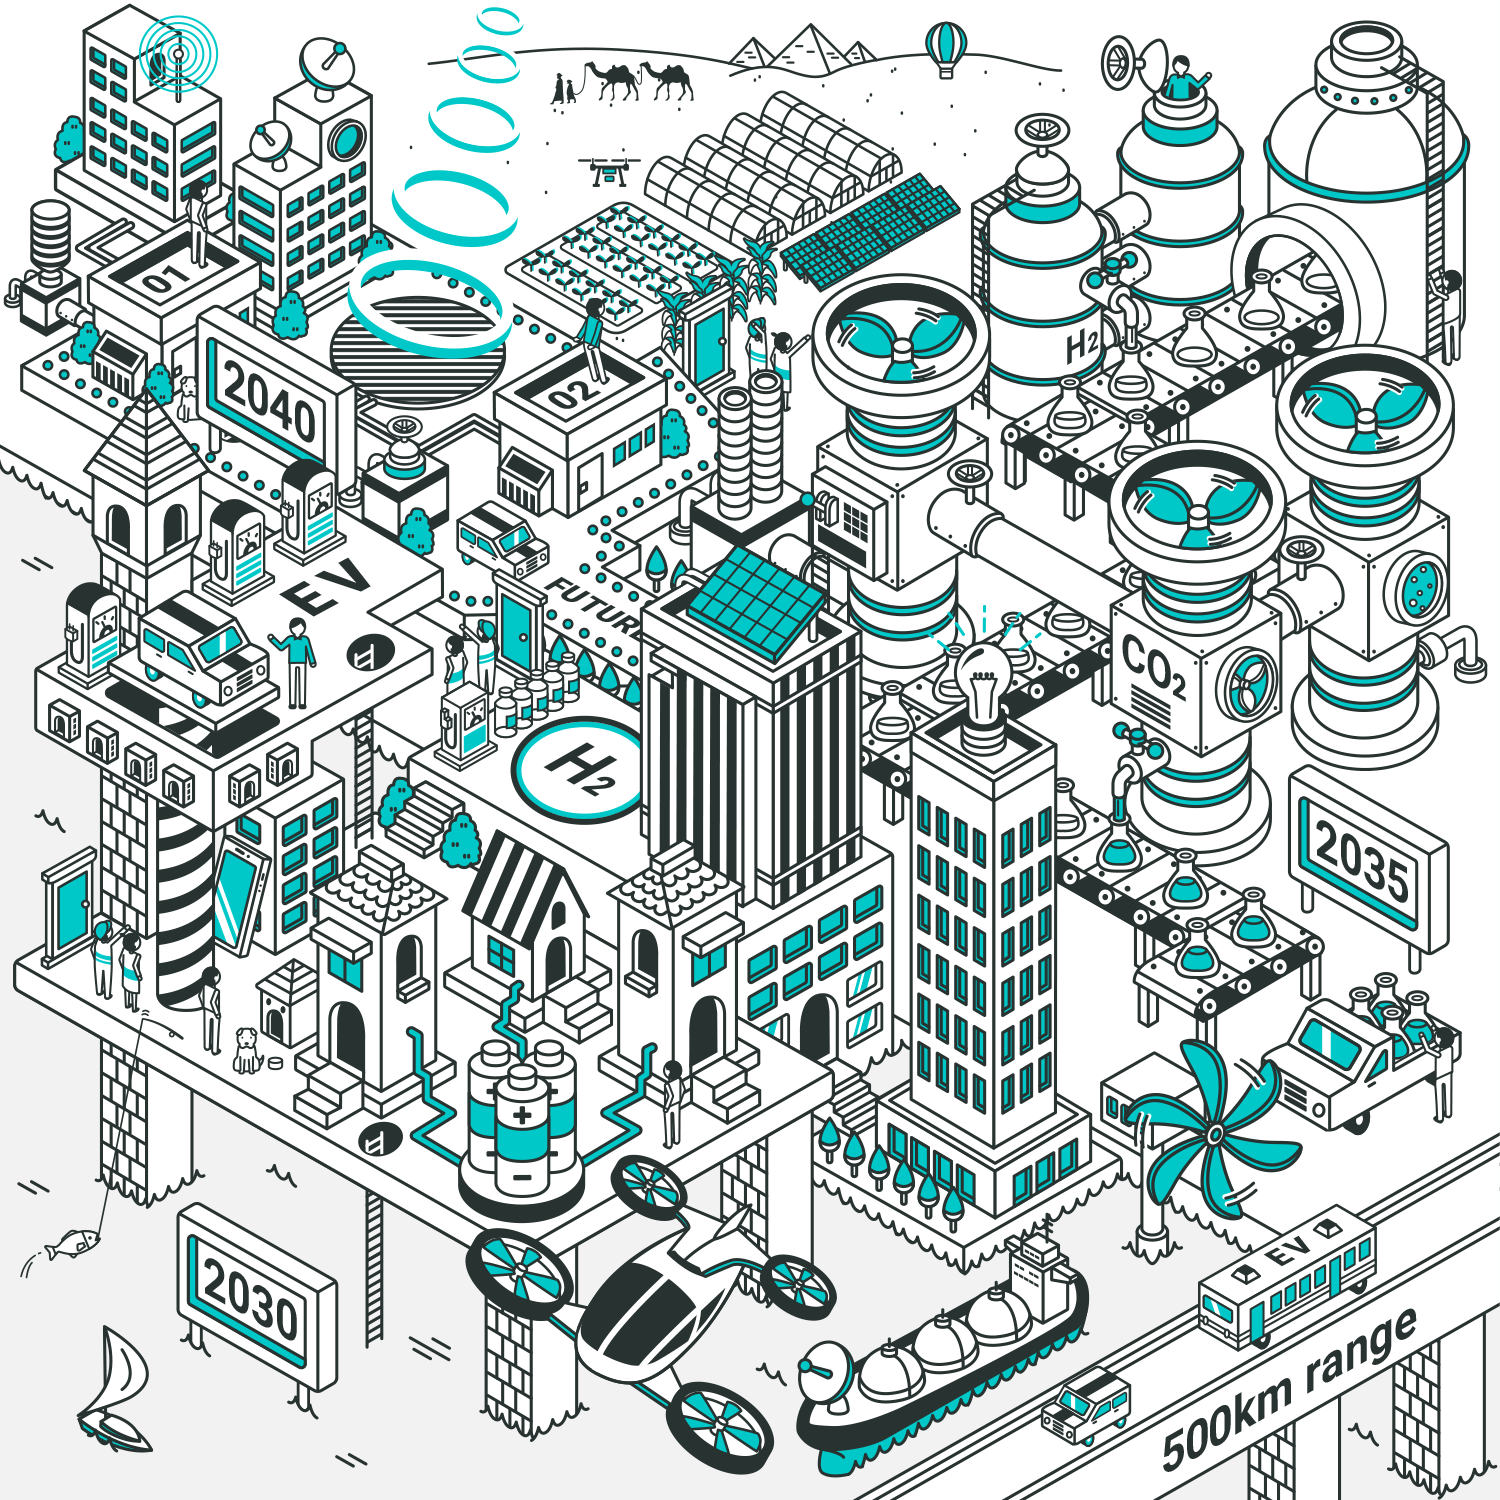 カーボンゼロへの道 2050年の街、描けるか